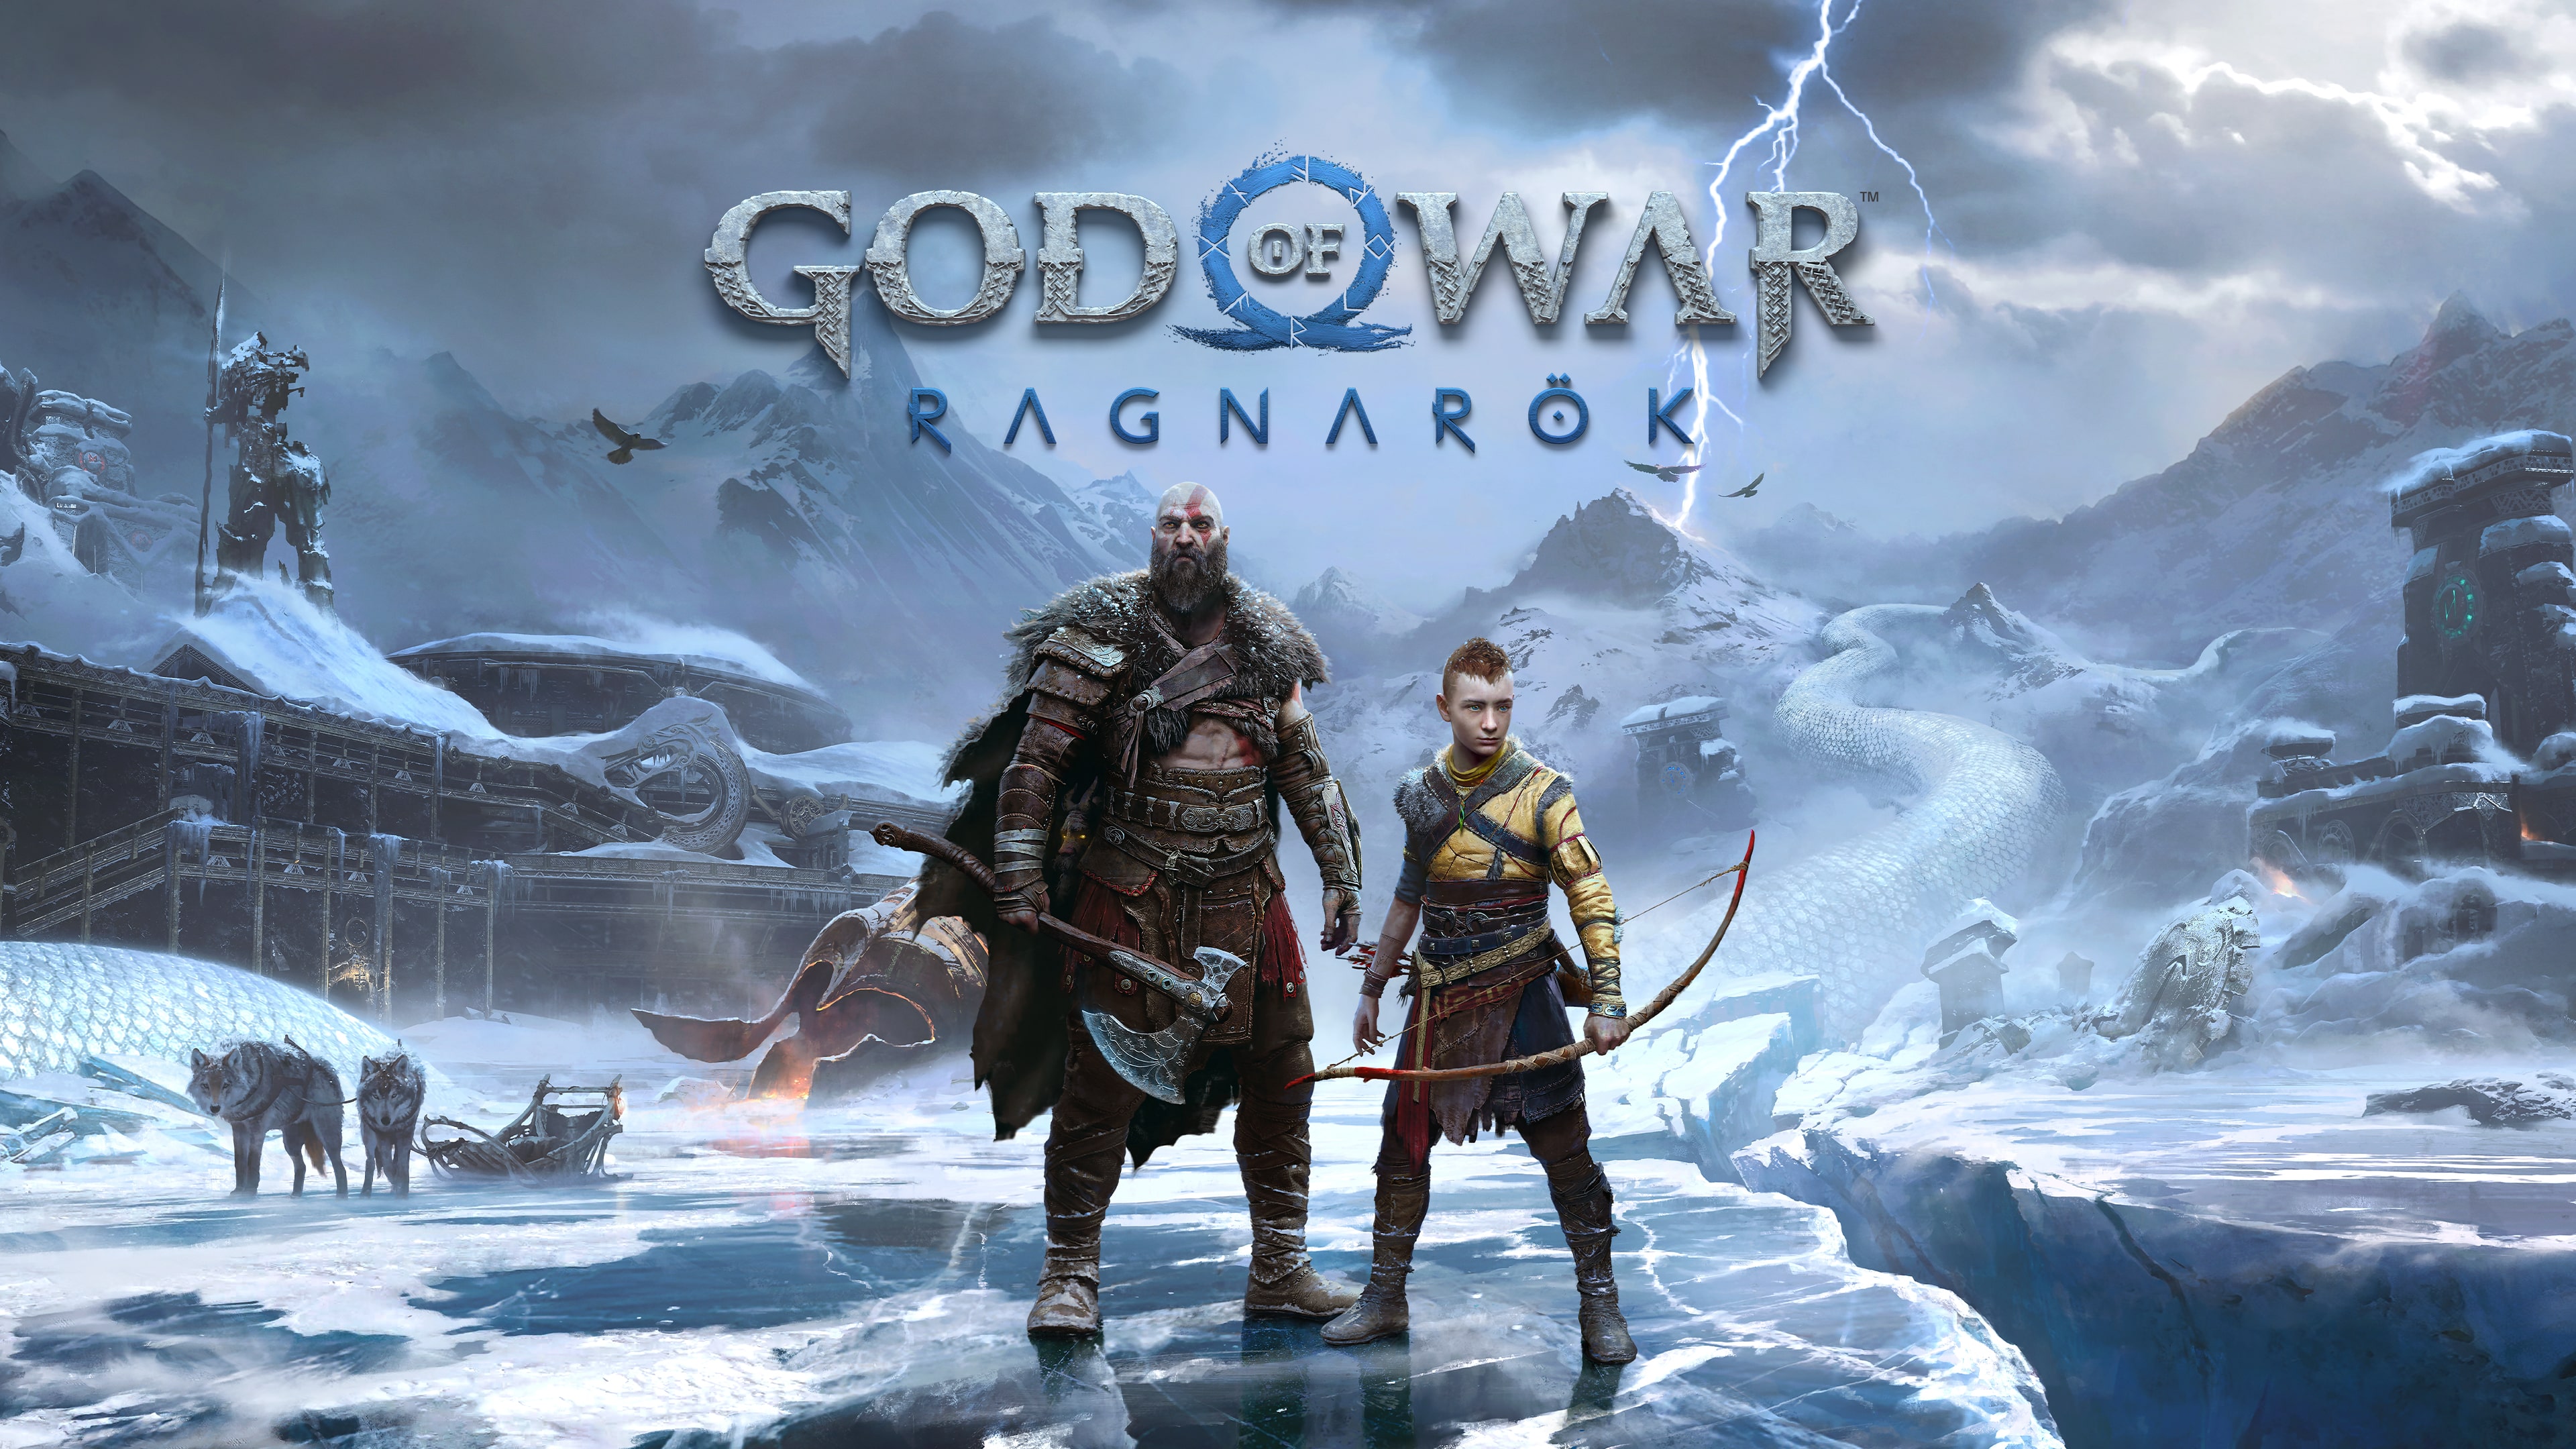 Vores firma Kemiker sporadisk God of War Ragnarök - PS5 and PS4 Games | PlayStation (US)